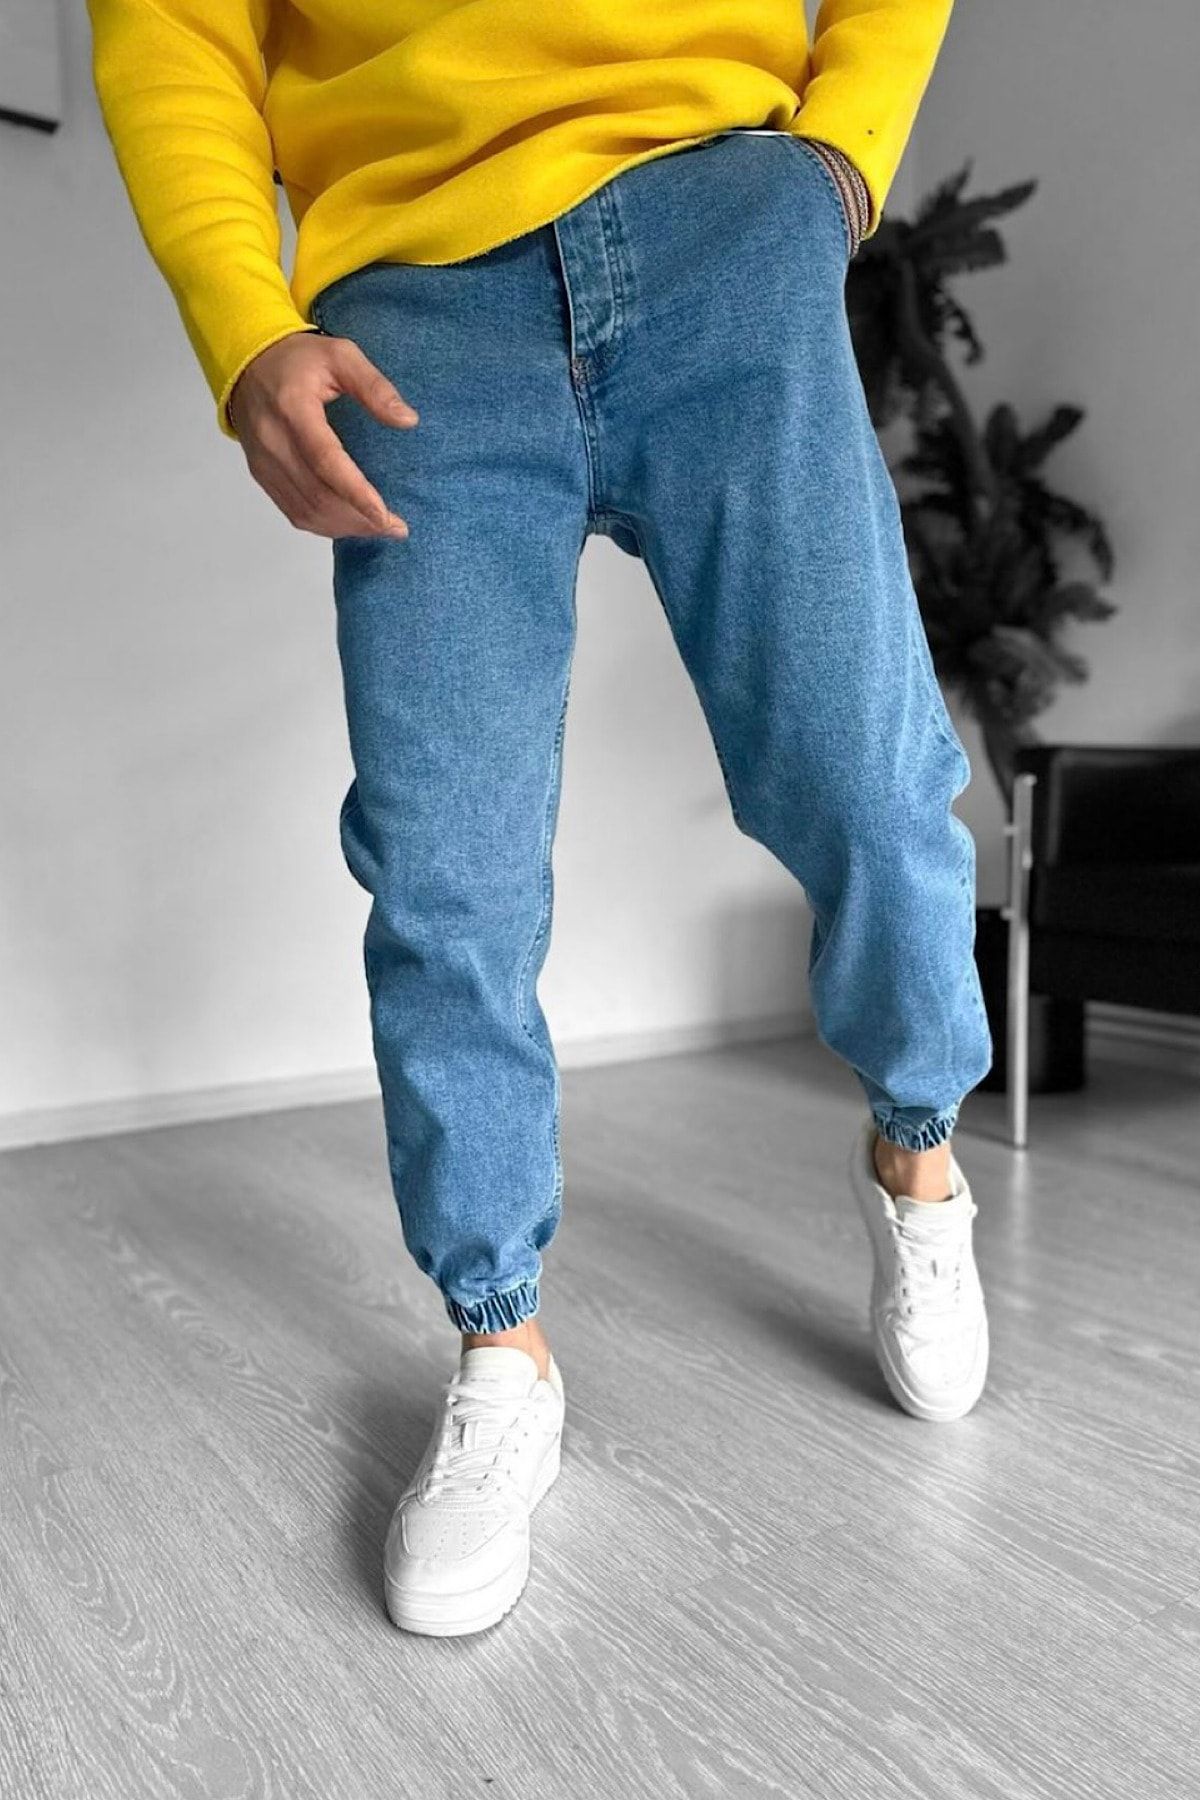 jogger jeans, 2 colors